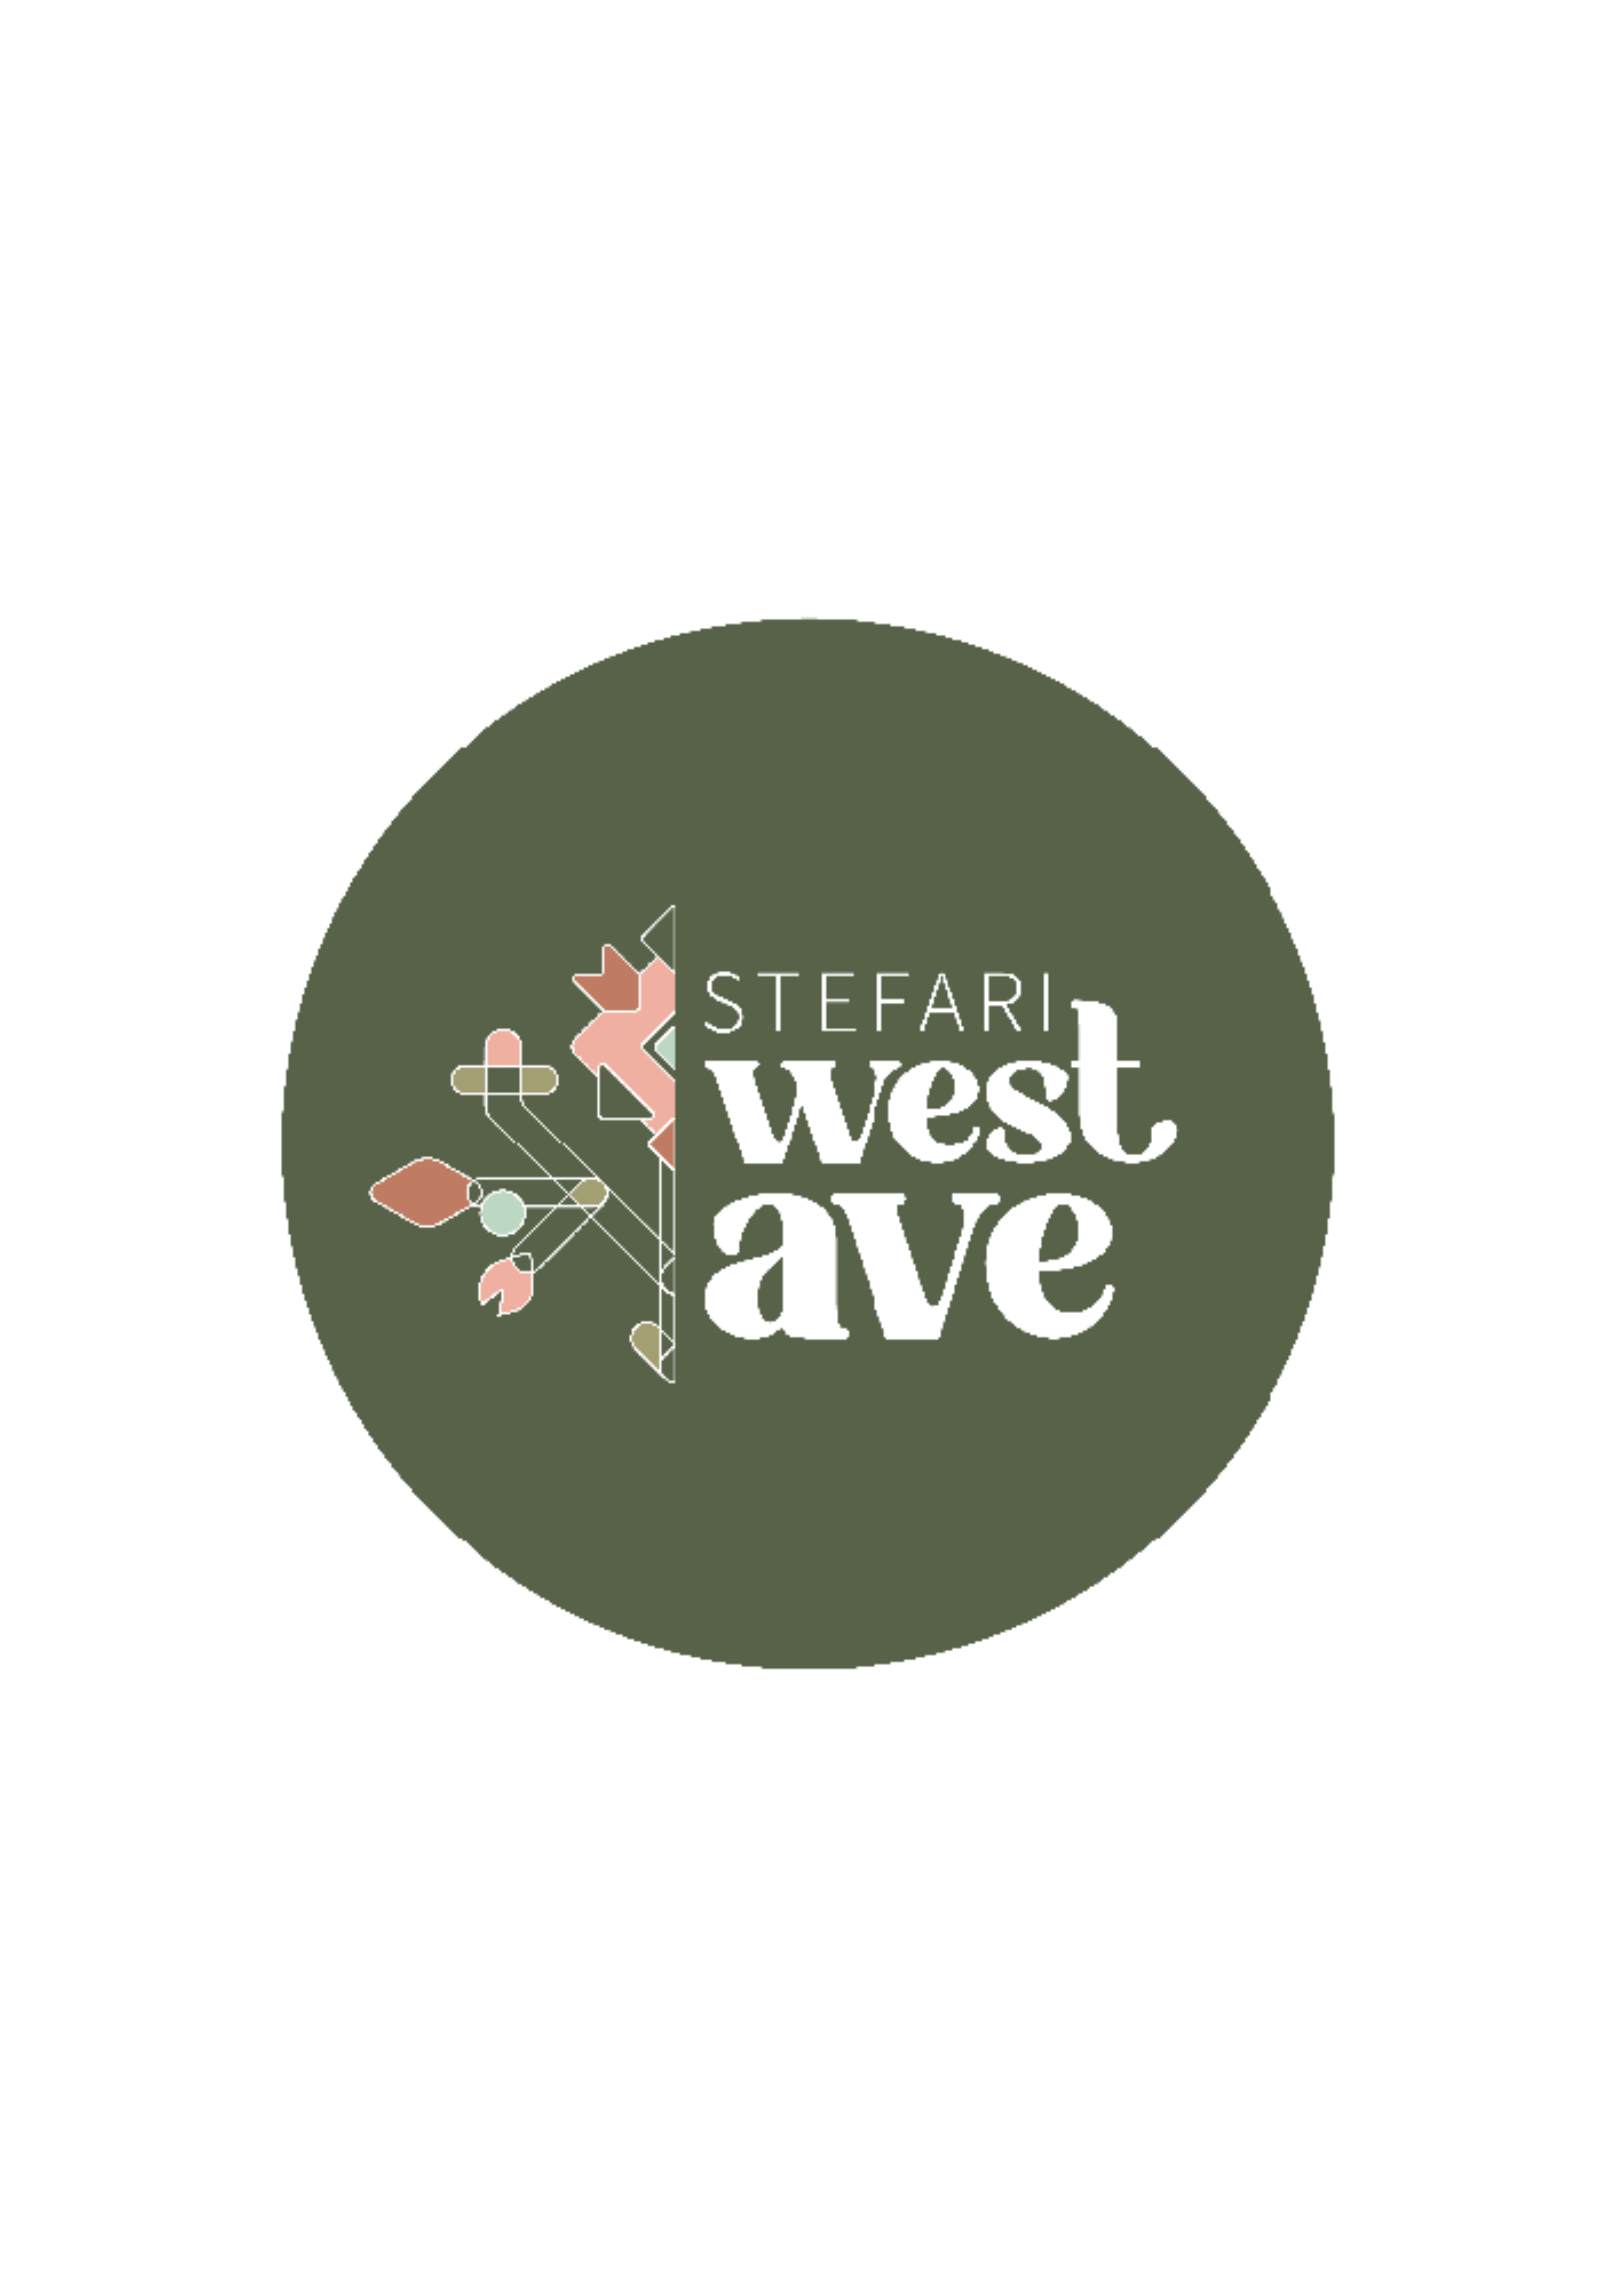 Stefari West Ave. Logo